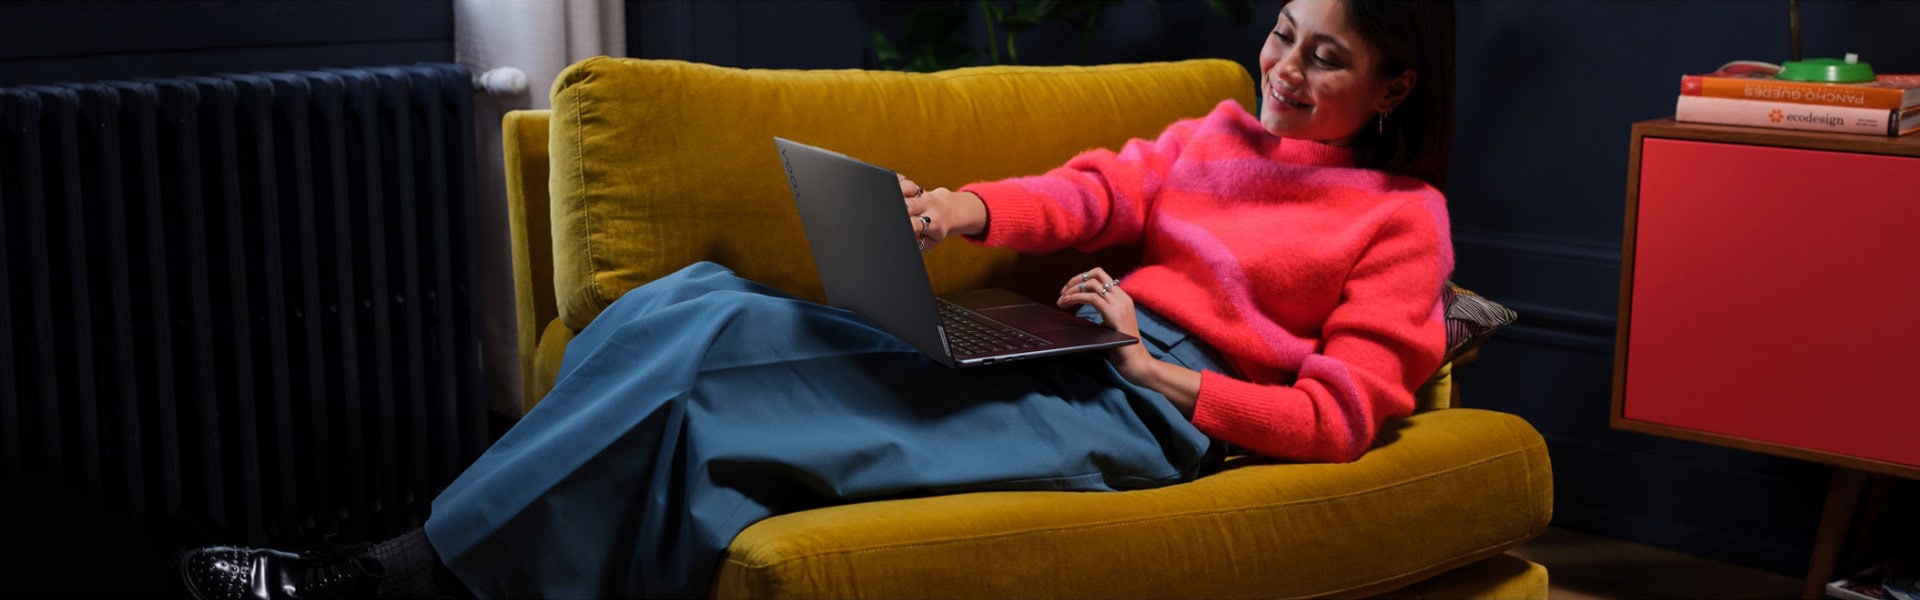 Geniş bir koltukta arkasına yaslanmış, kucağında Lenovo Yoga dizüstü bilgisayarıyla oturan bir kadın